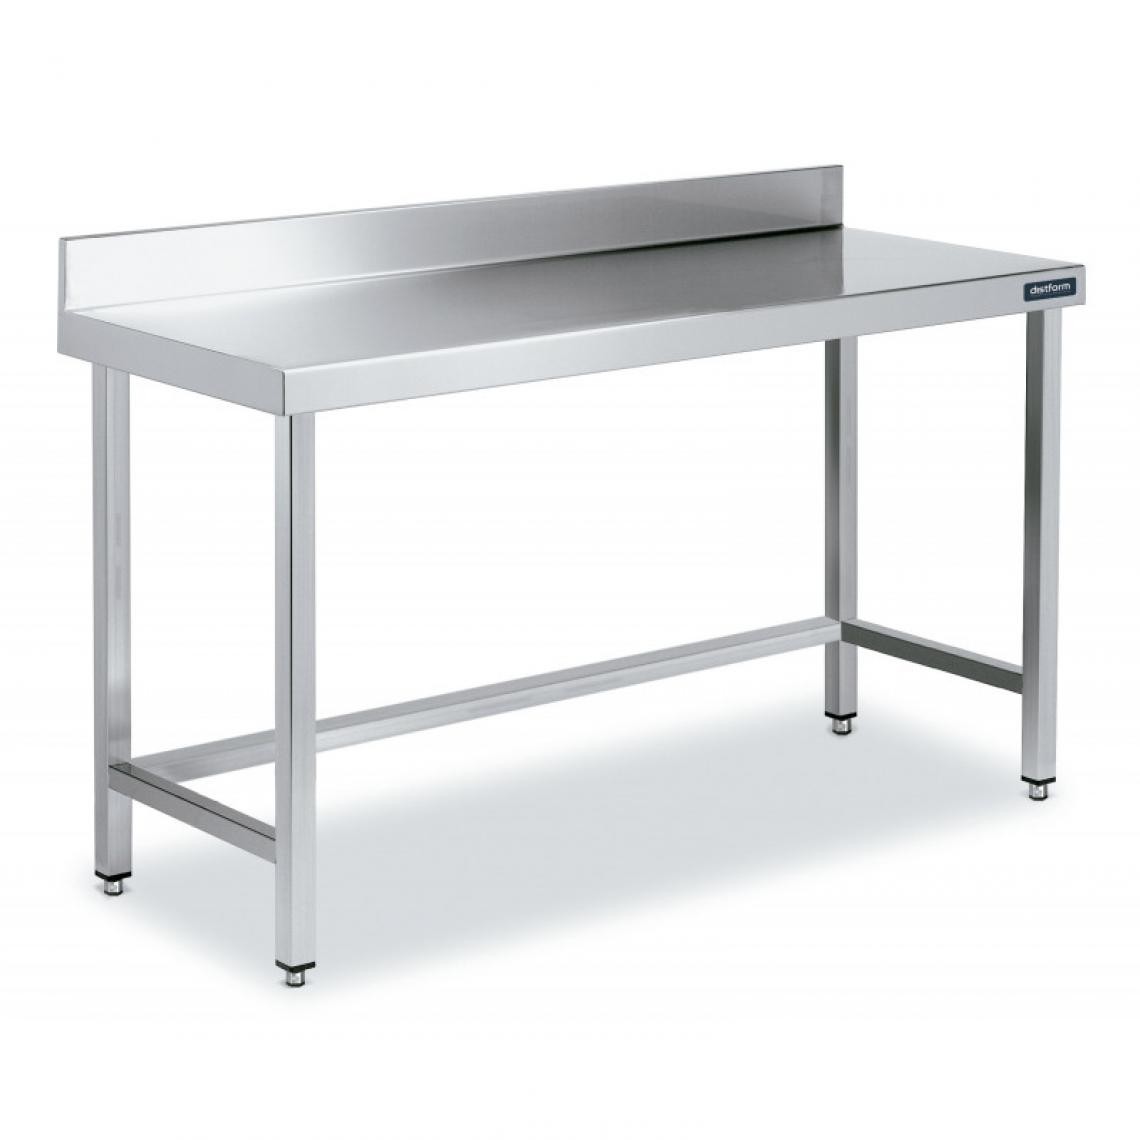 DISTFORM - Table Inox de Travail avec Dosseret Gamme 900 - Distform - Acier inoxydable1500x900 - Tables à manger